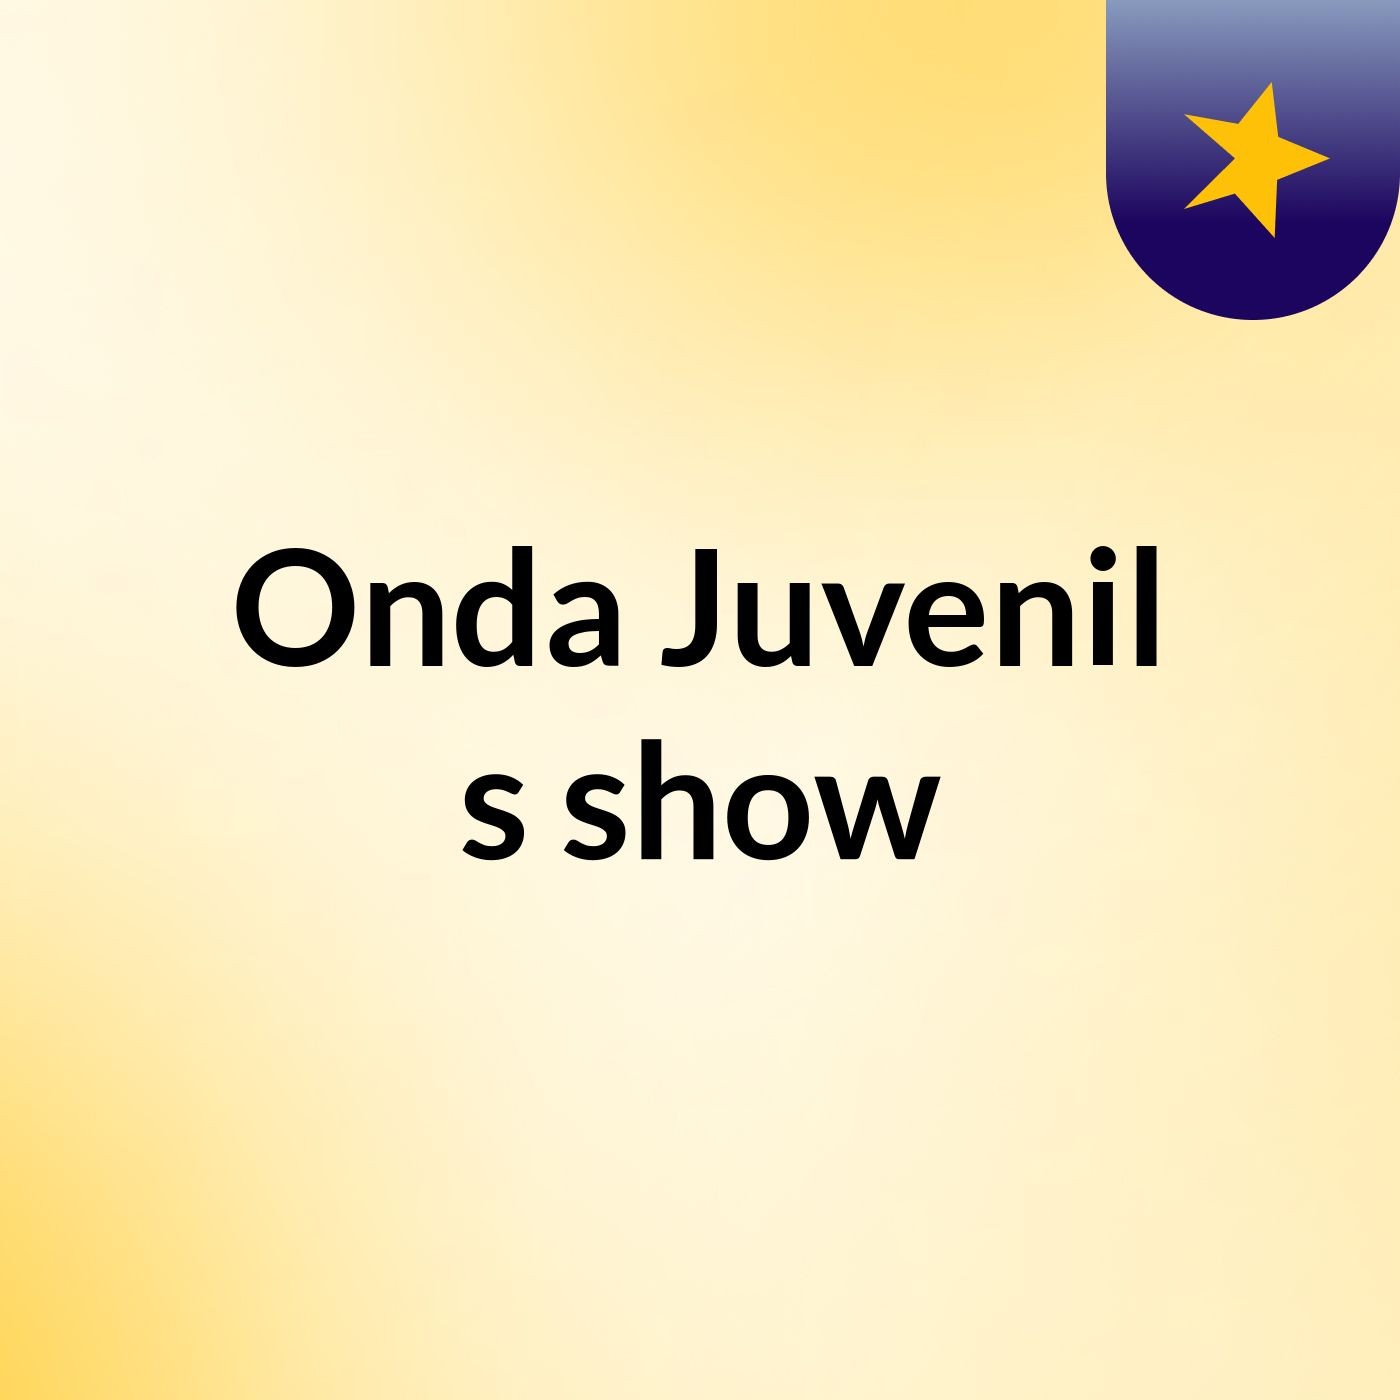 Onda Juvenil's show